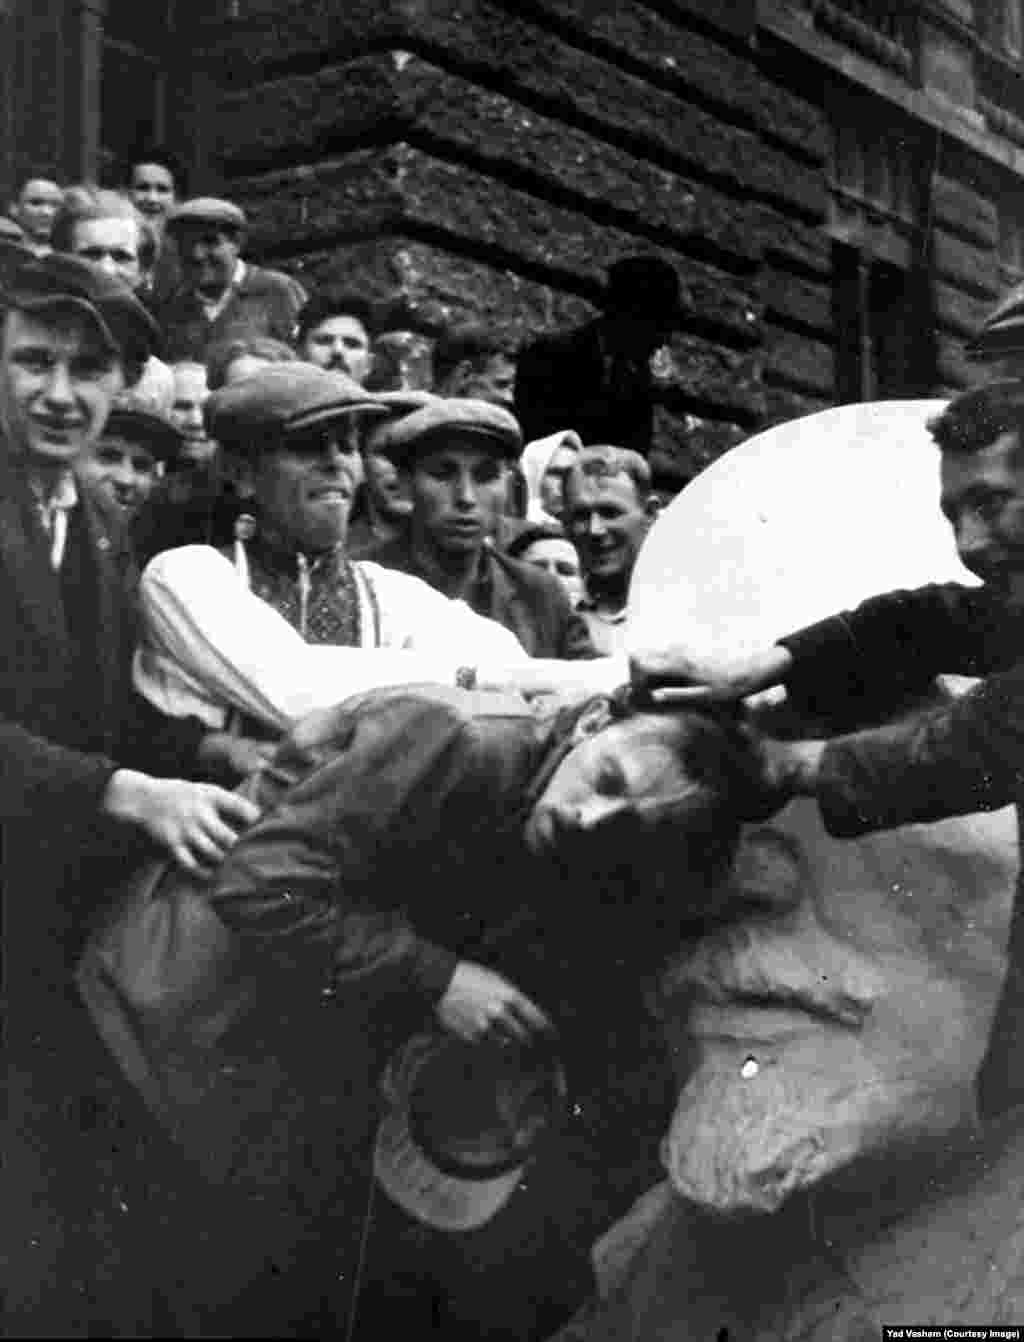 Толпа издевается над евреем возле бюста Ленина на западе Украины. После оккупации нацистские войска открыли тюрьмы советских спецслужб. Преступления сталинизма стали известны и их использовали нацистские пропагандисты, чтобы разжечь антисемитизм, делая упор на еврейском происхождении Сталина.